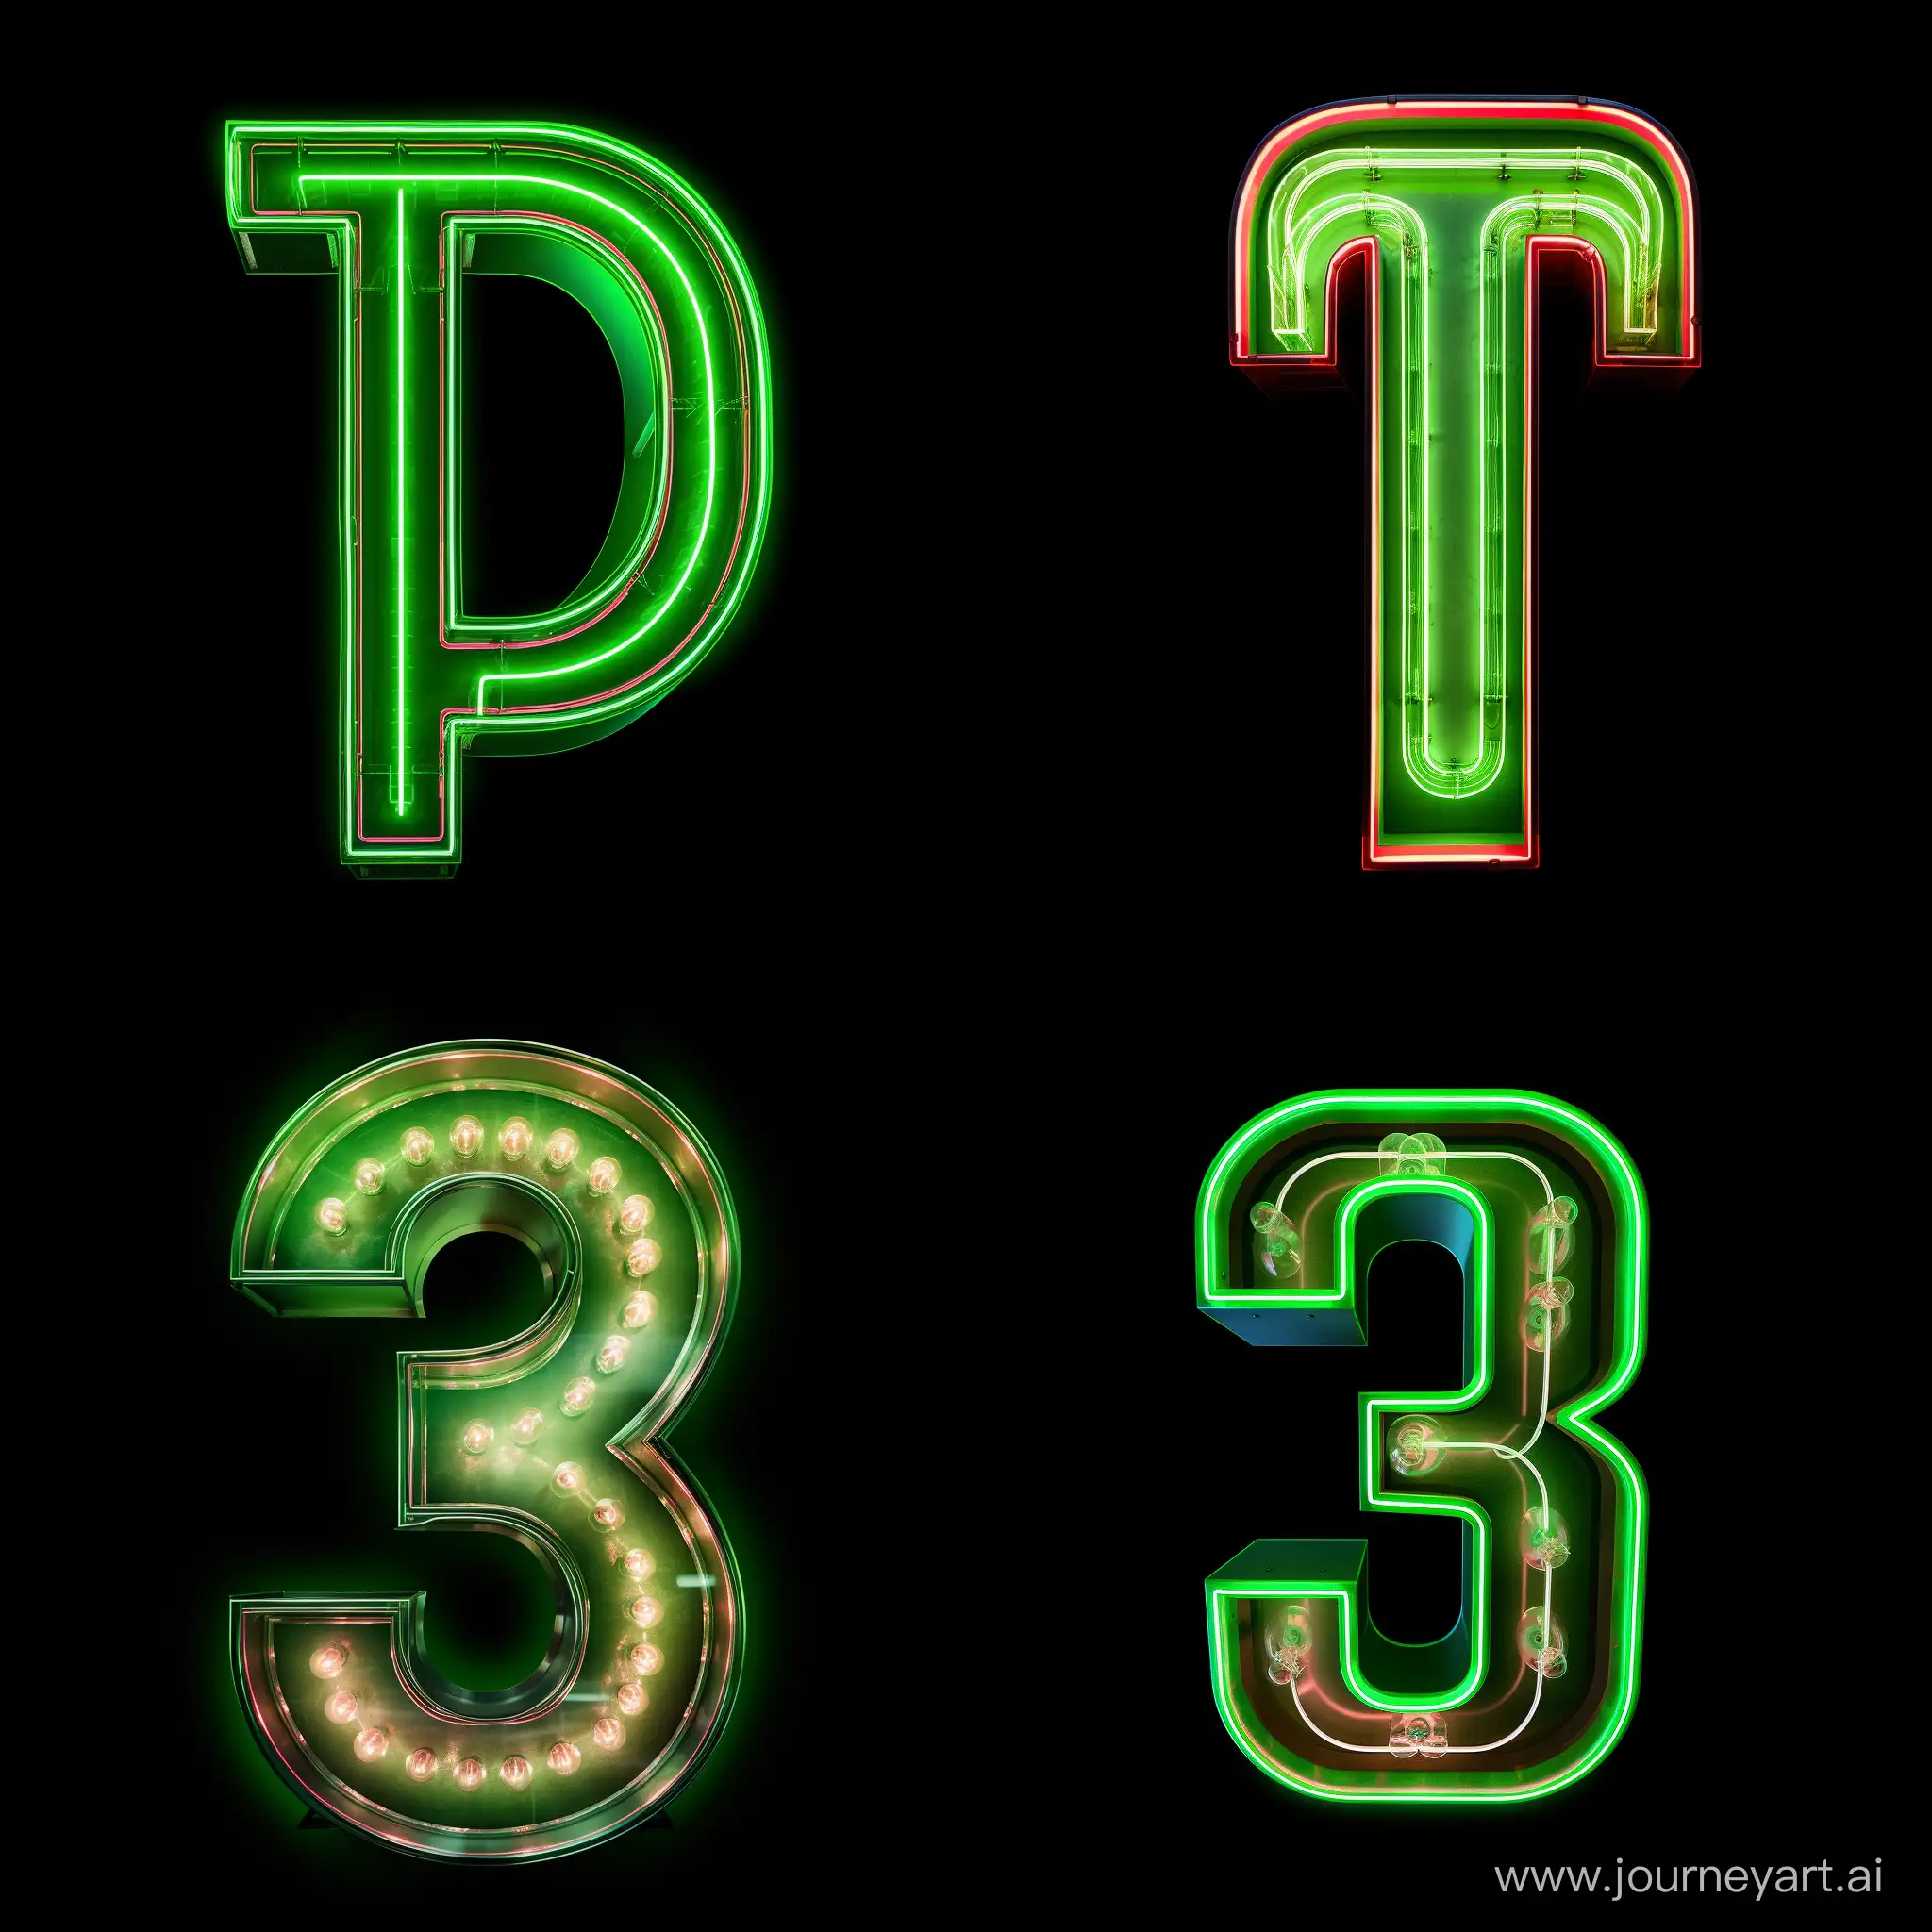 неоново-зеленая буква "пи" (та, которая обозначает число 3,14...) в ретро стиле (нужно чтобы буква состояла из одинаковых параллельных неоновых полос, как будто она выводится на ЭЛТ мониторе)